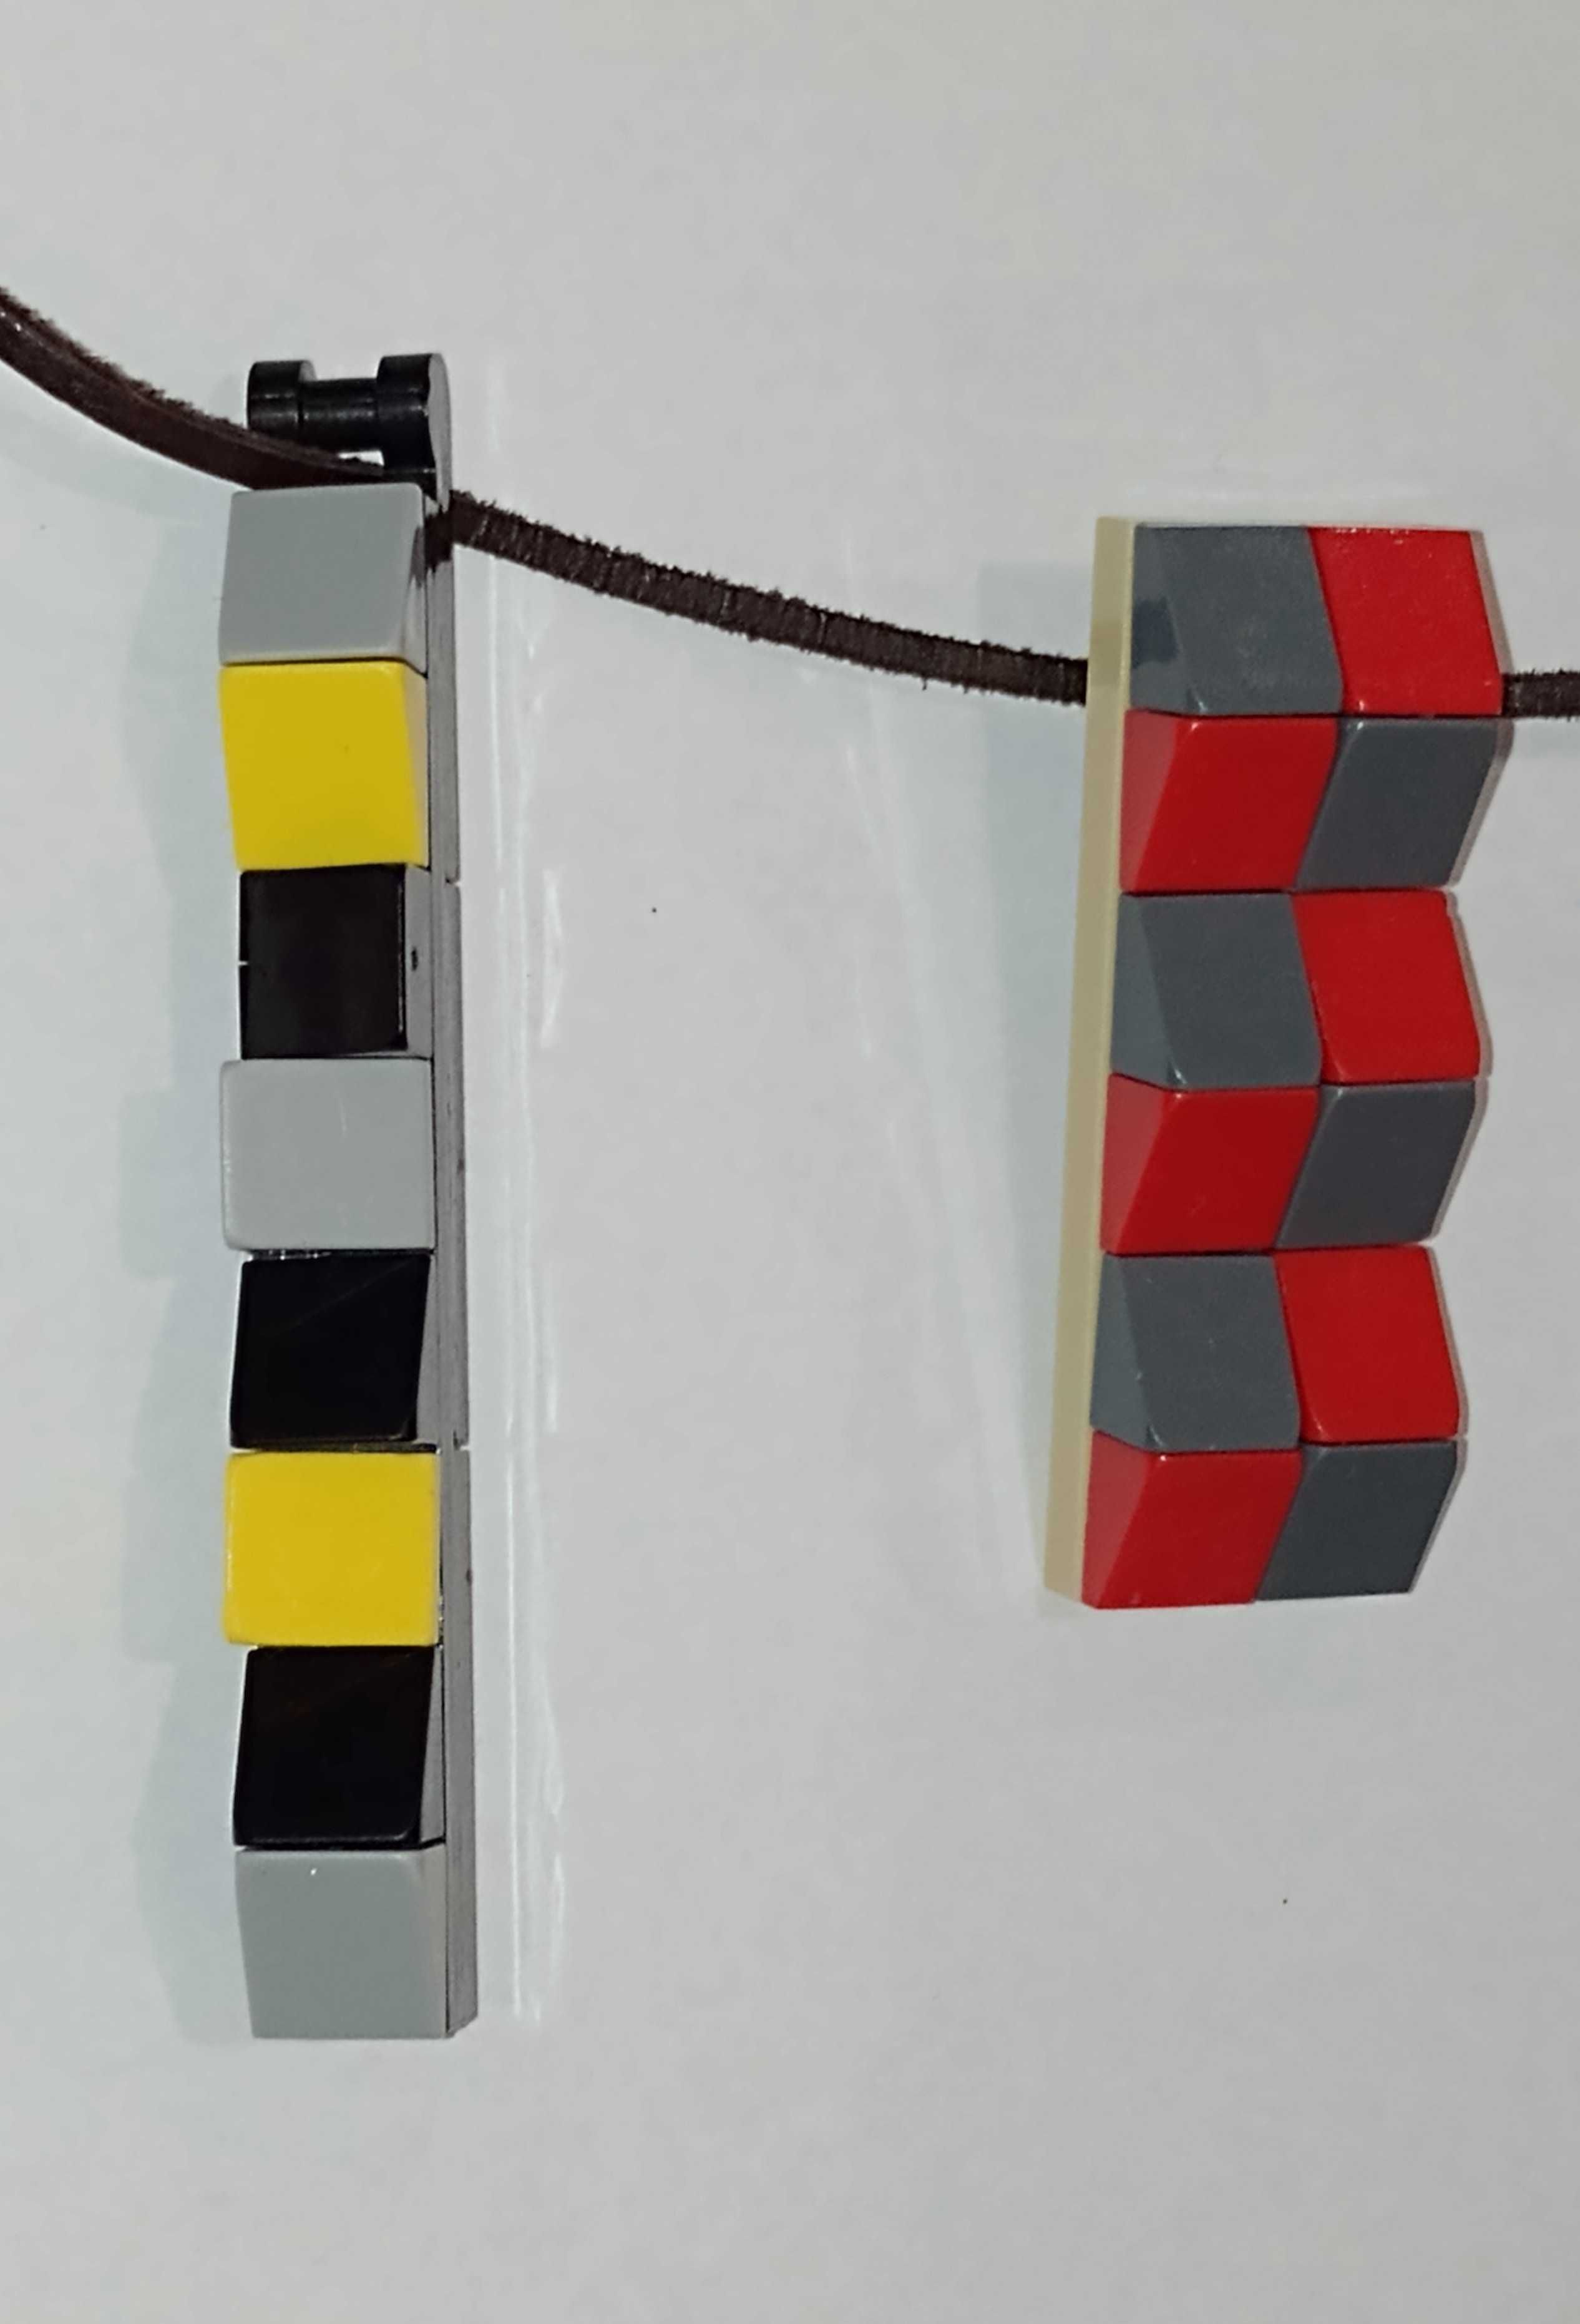 Naszyjnik z klocków LEGO - unikaty-biżuteria do wyboru w cenie kwiatka